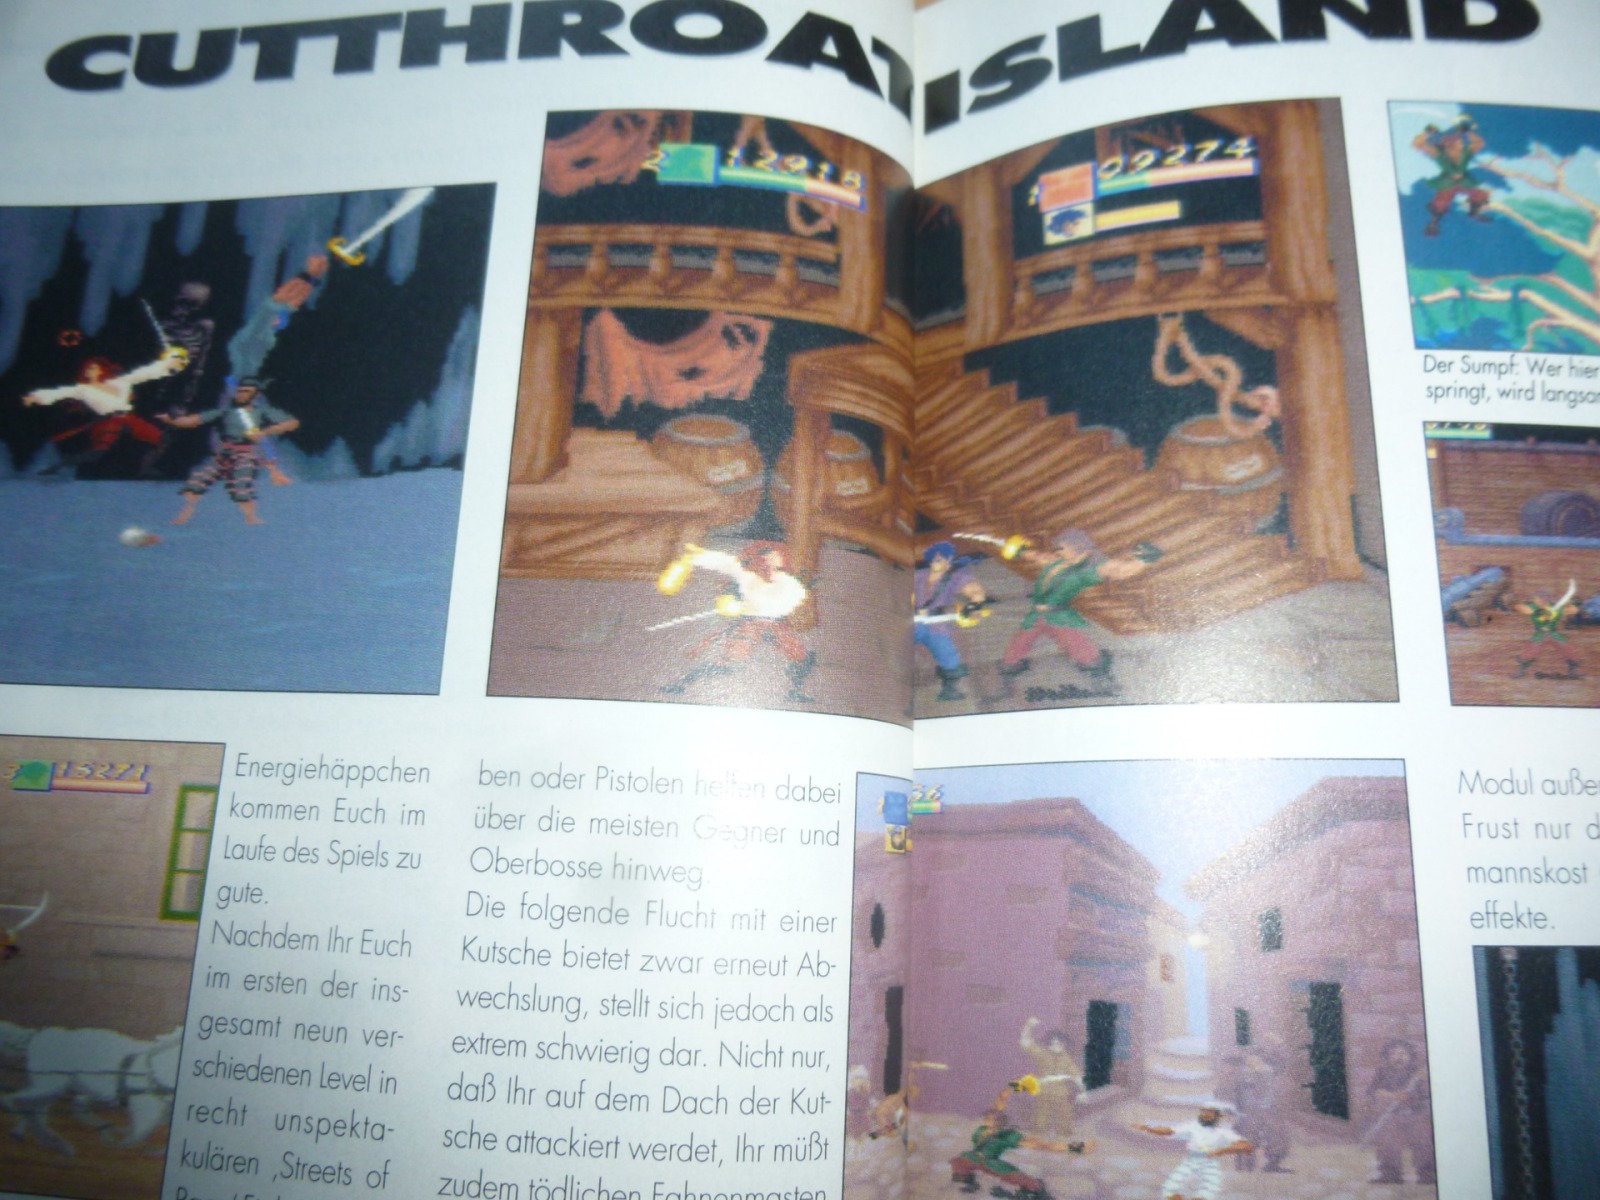 TOTAL Das unabhängige Magazin - 100 Nintendo - Ausgabe 4/96 1996 17